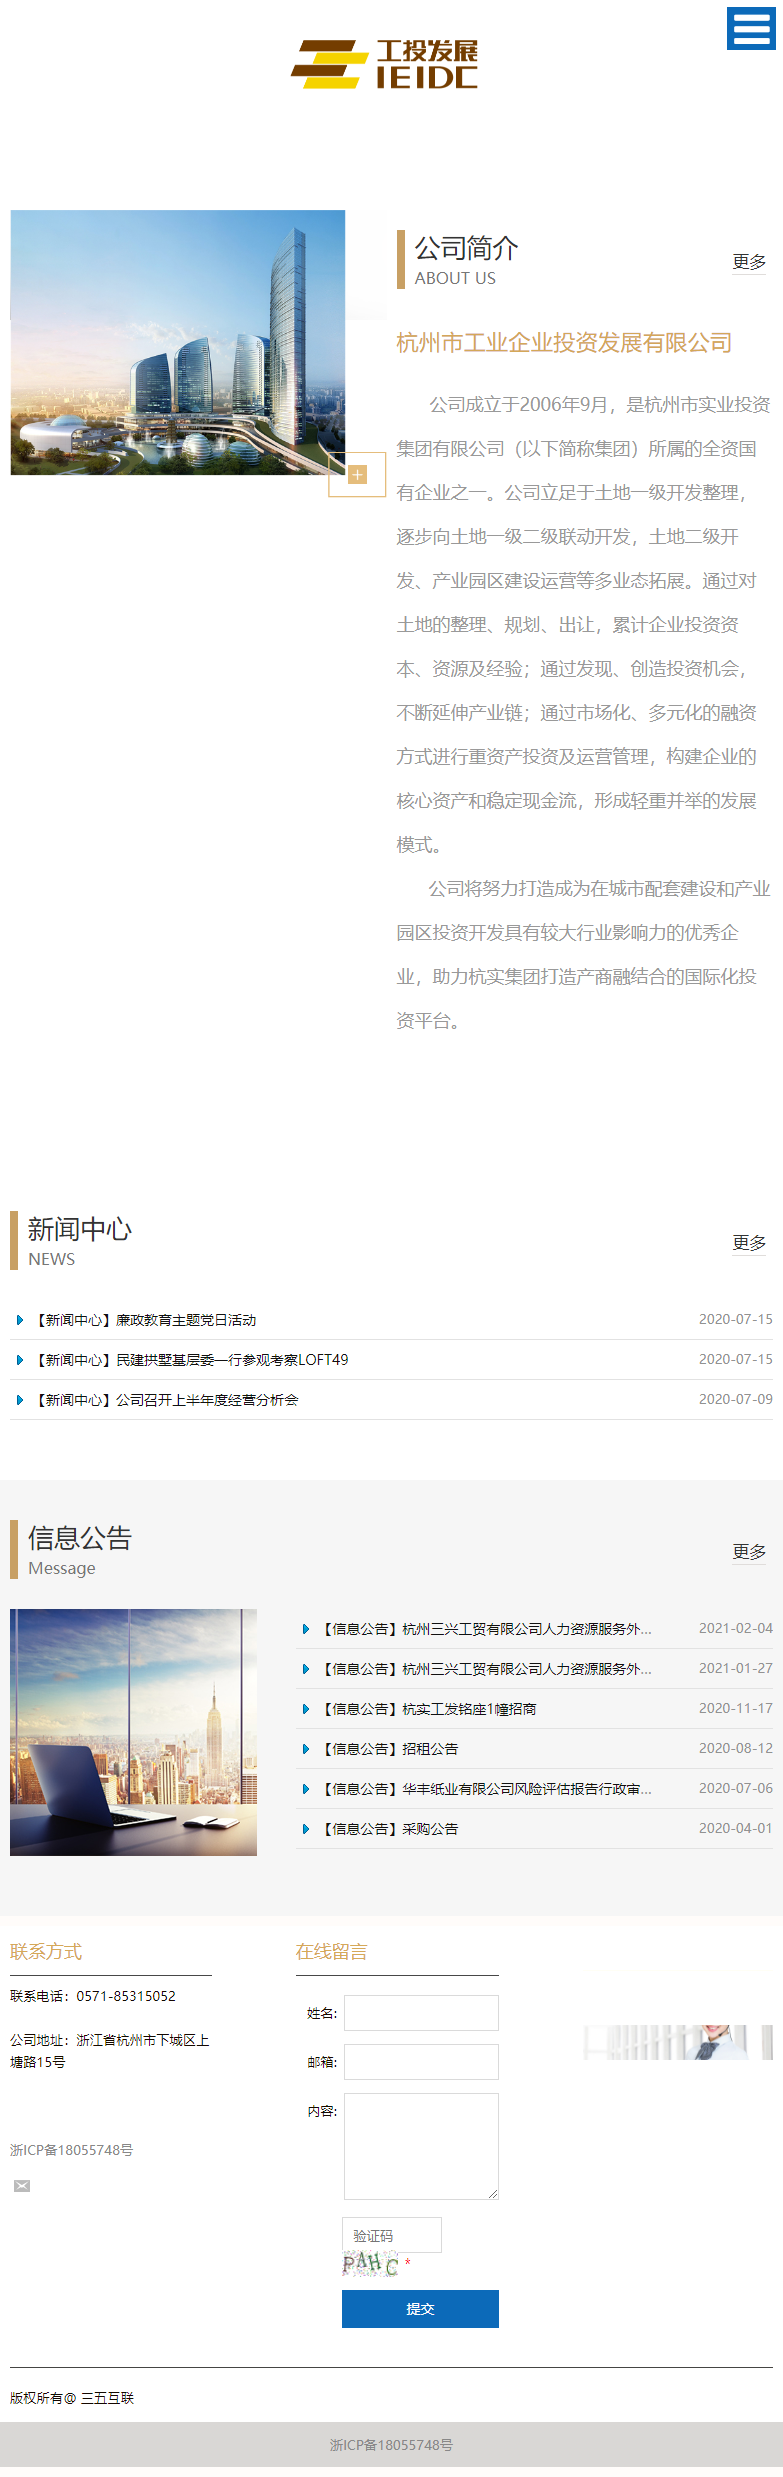 杭州市工业企业投资发展有限公司网站案例